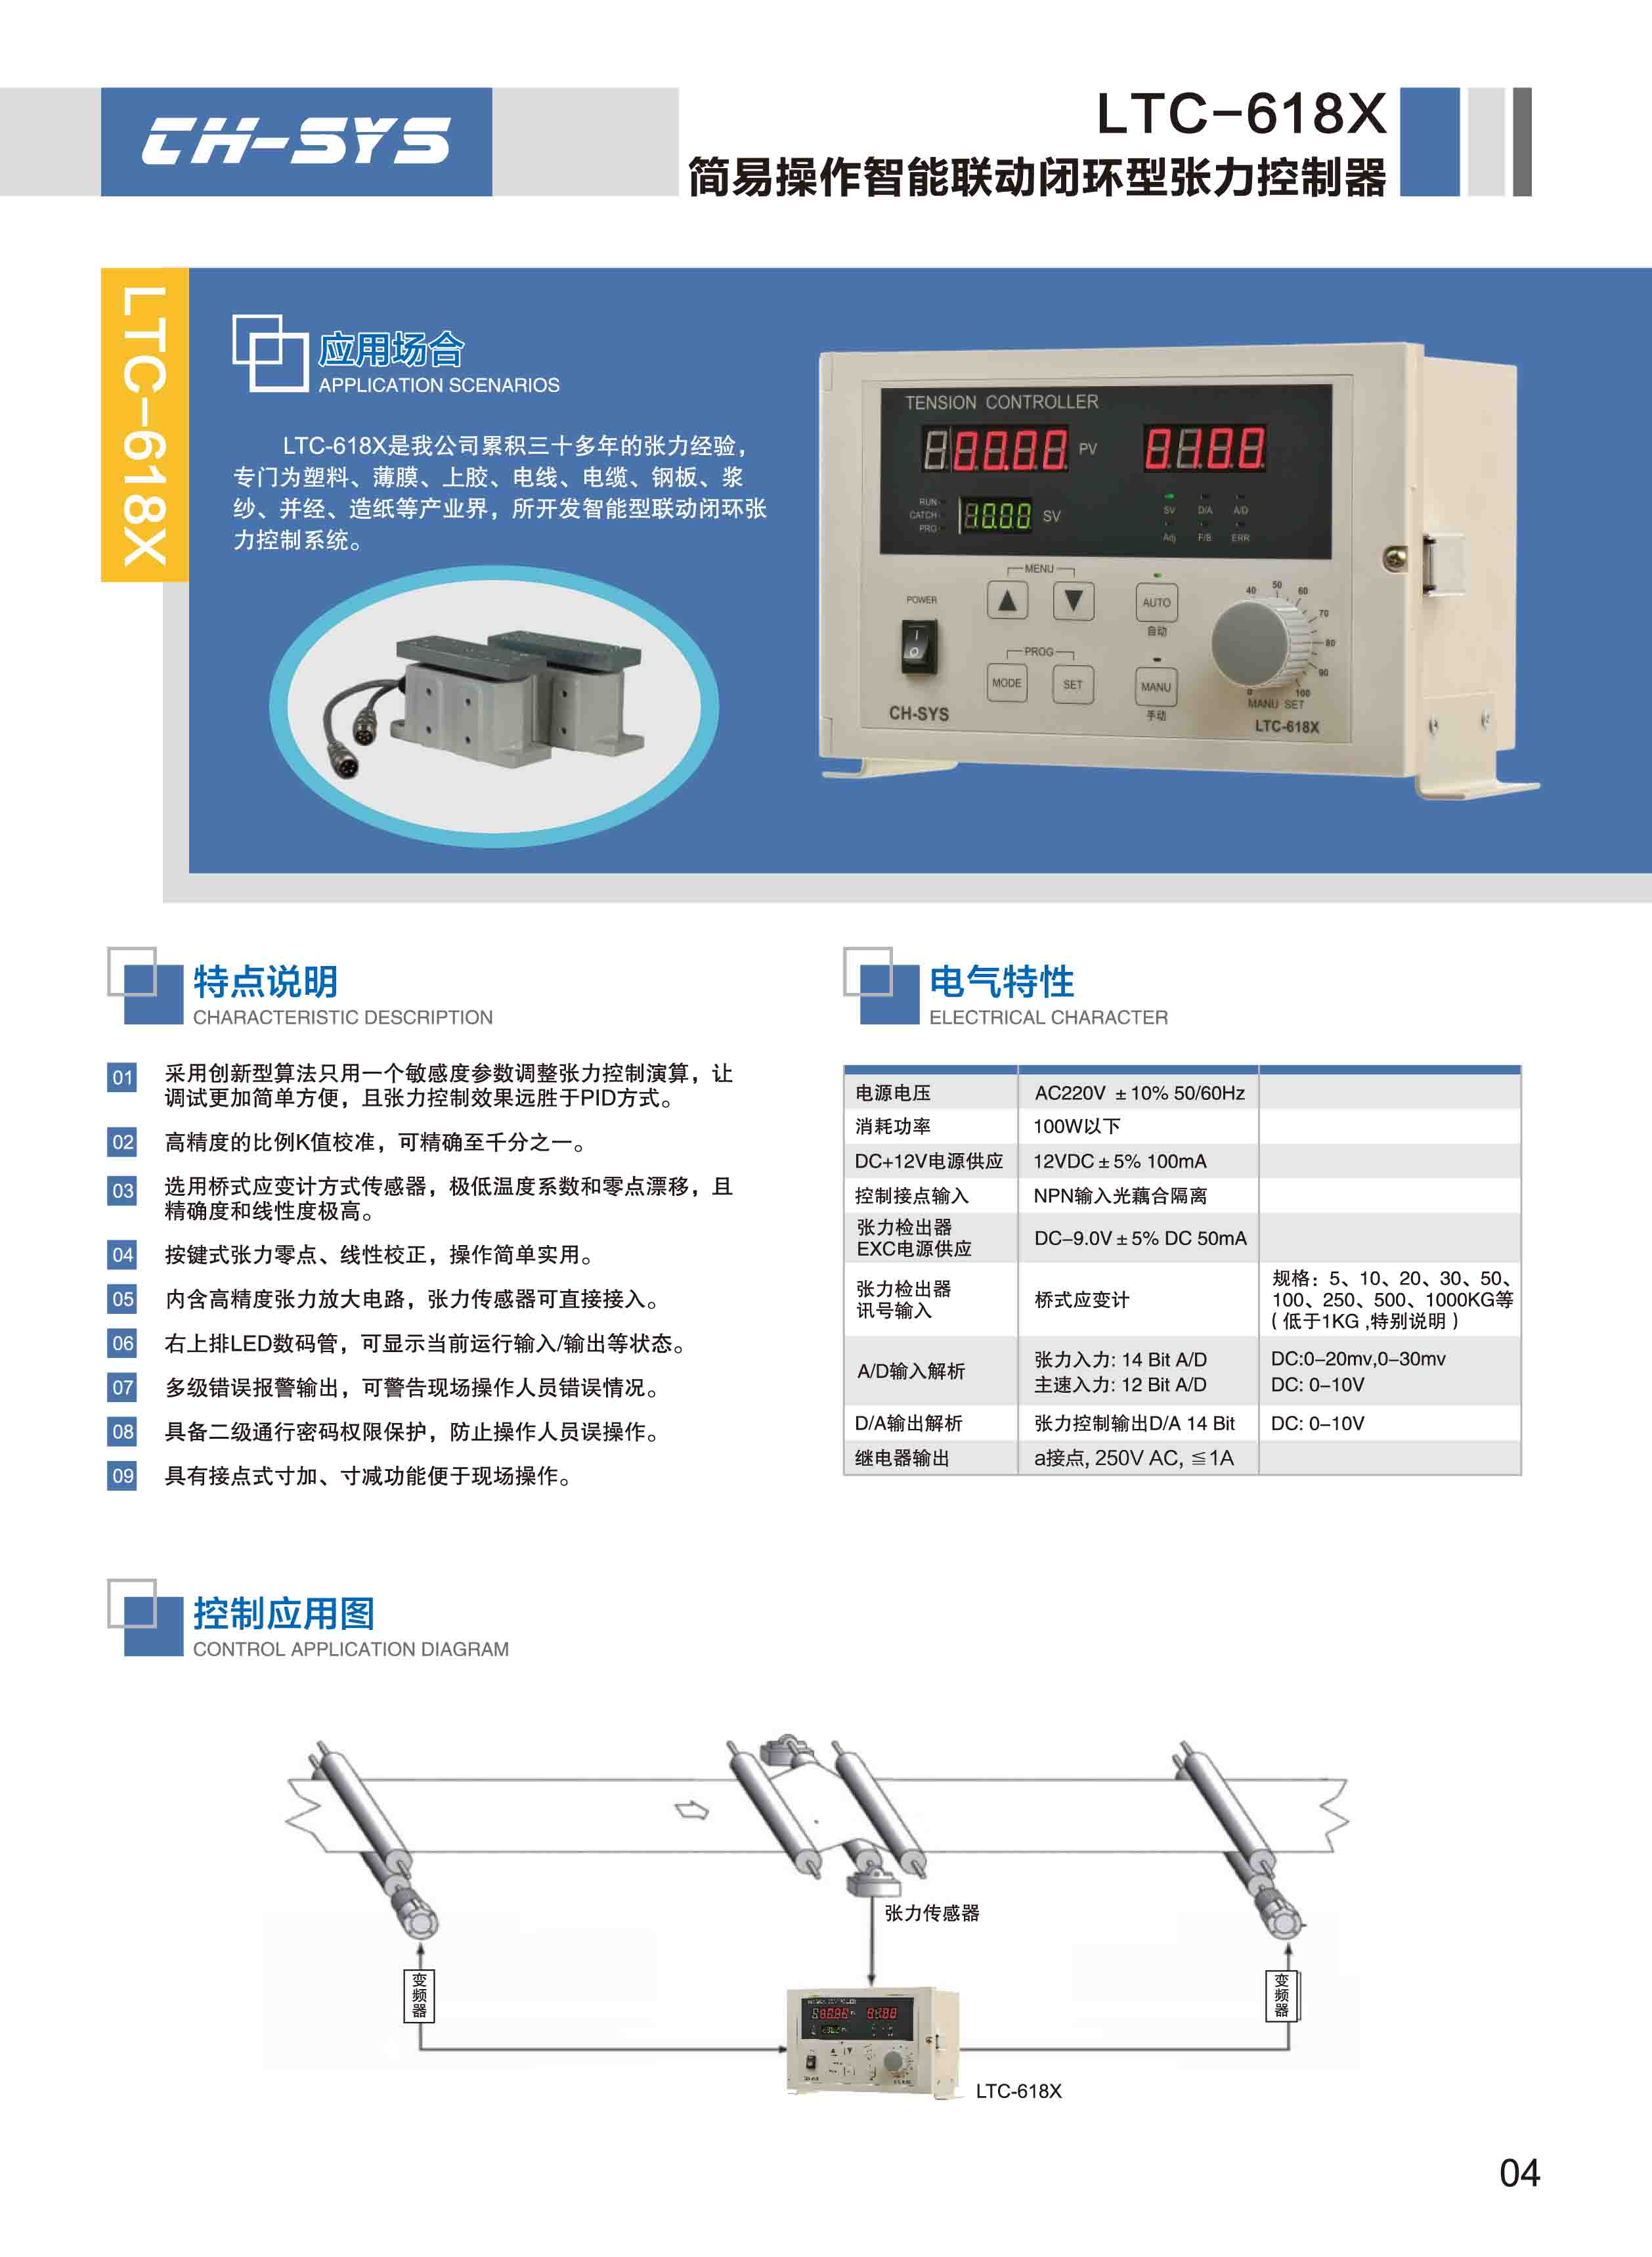 台湾智能联动数位高精度张力控制器LTC-618X LTC-618X,LC-6168F,TC-618F,TC-6068F,台湾控制器